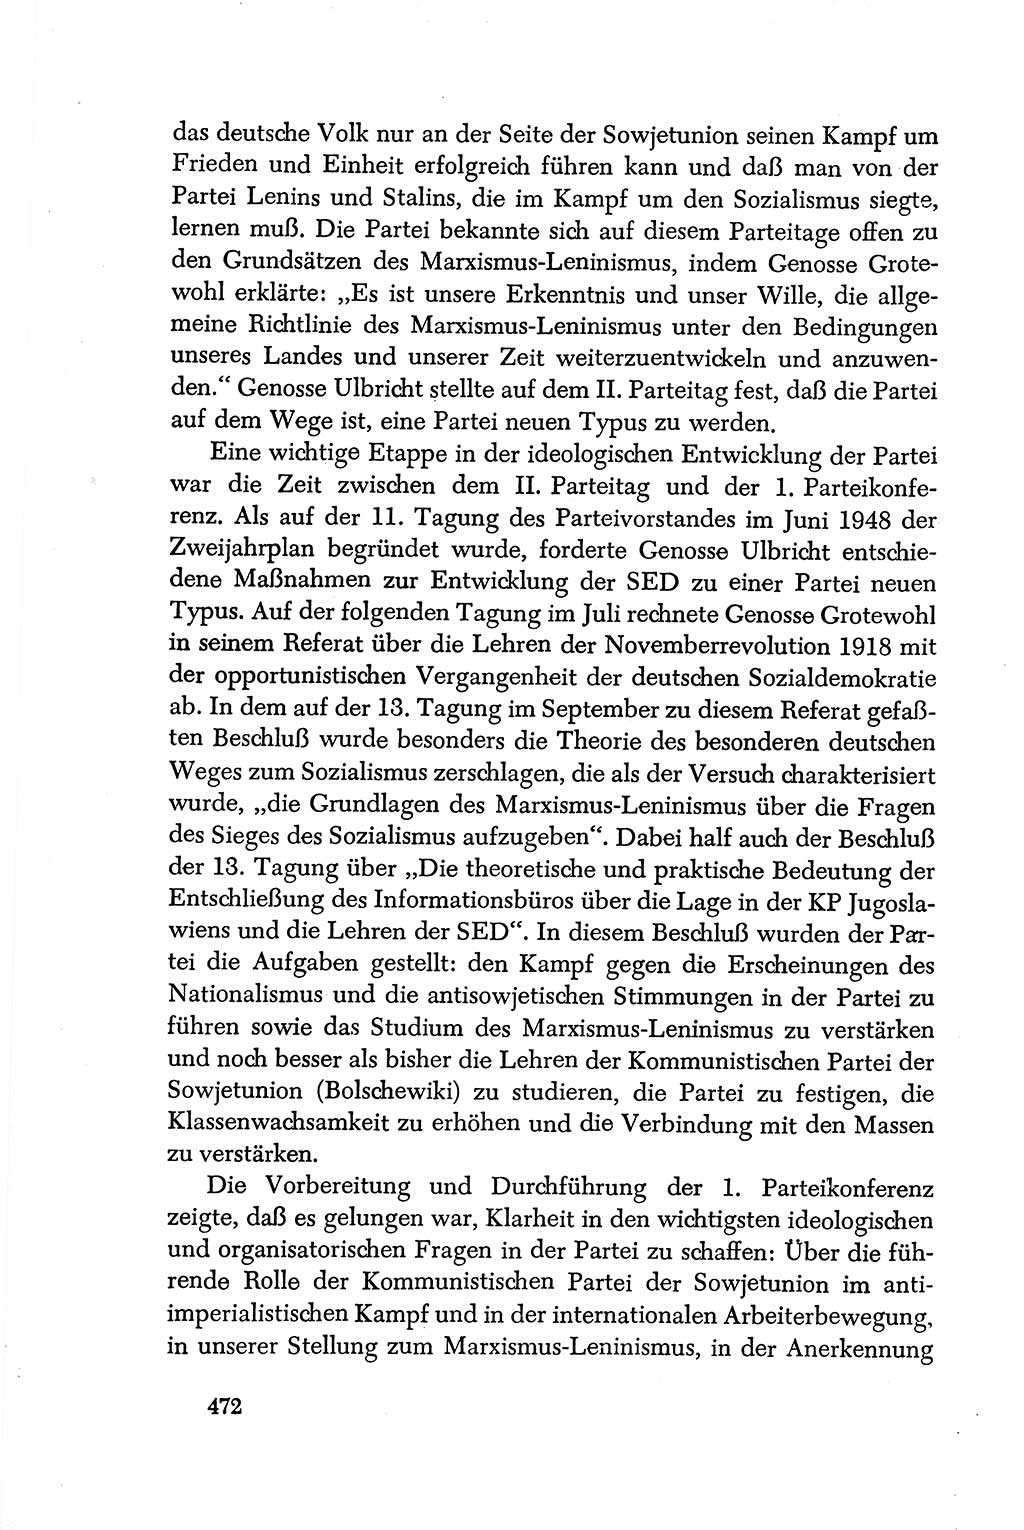 Dokumente der Sozialistischen Einheitspartei Deutschlands (SED) [Deutsche Demokratische Republik (DDR)] 1950-1952, Seite 472 (Dok. SED DDR 1950-1952, S. 472)